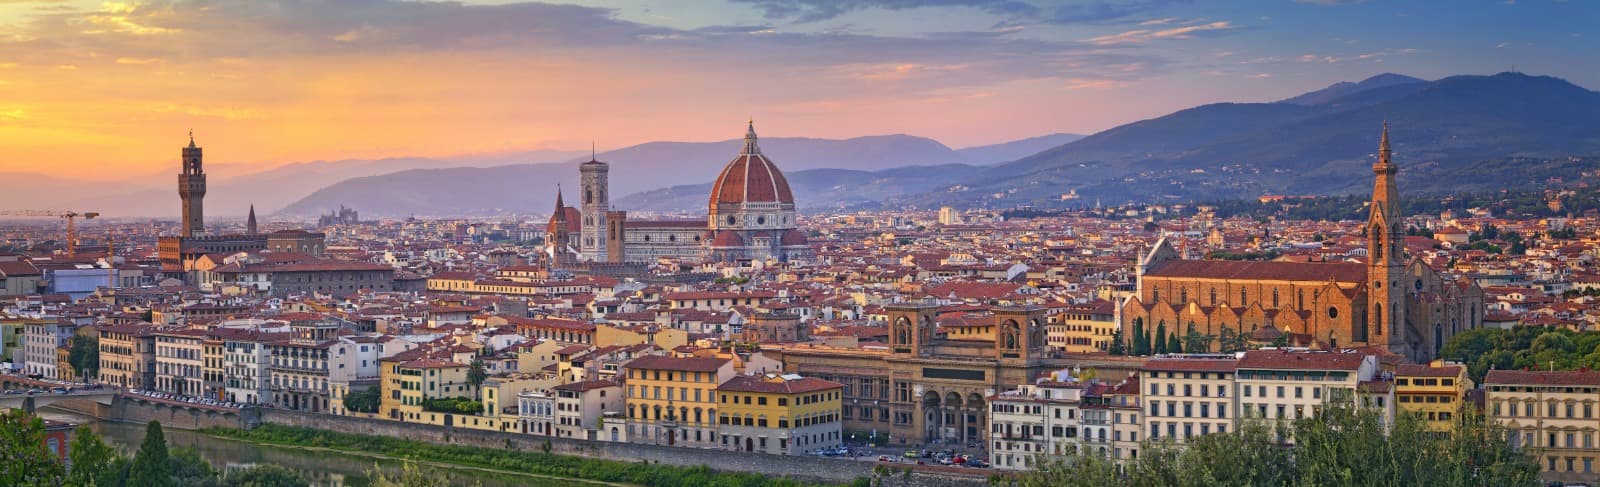 Firenzes historiske centrum